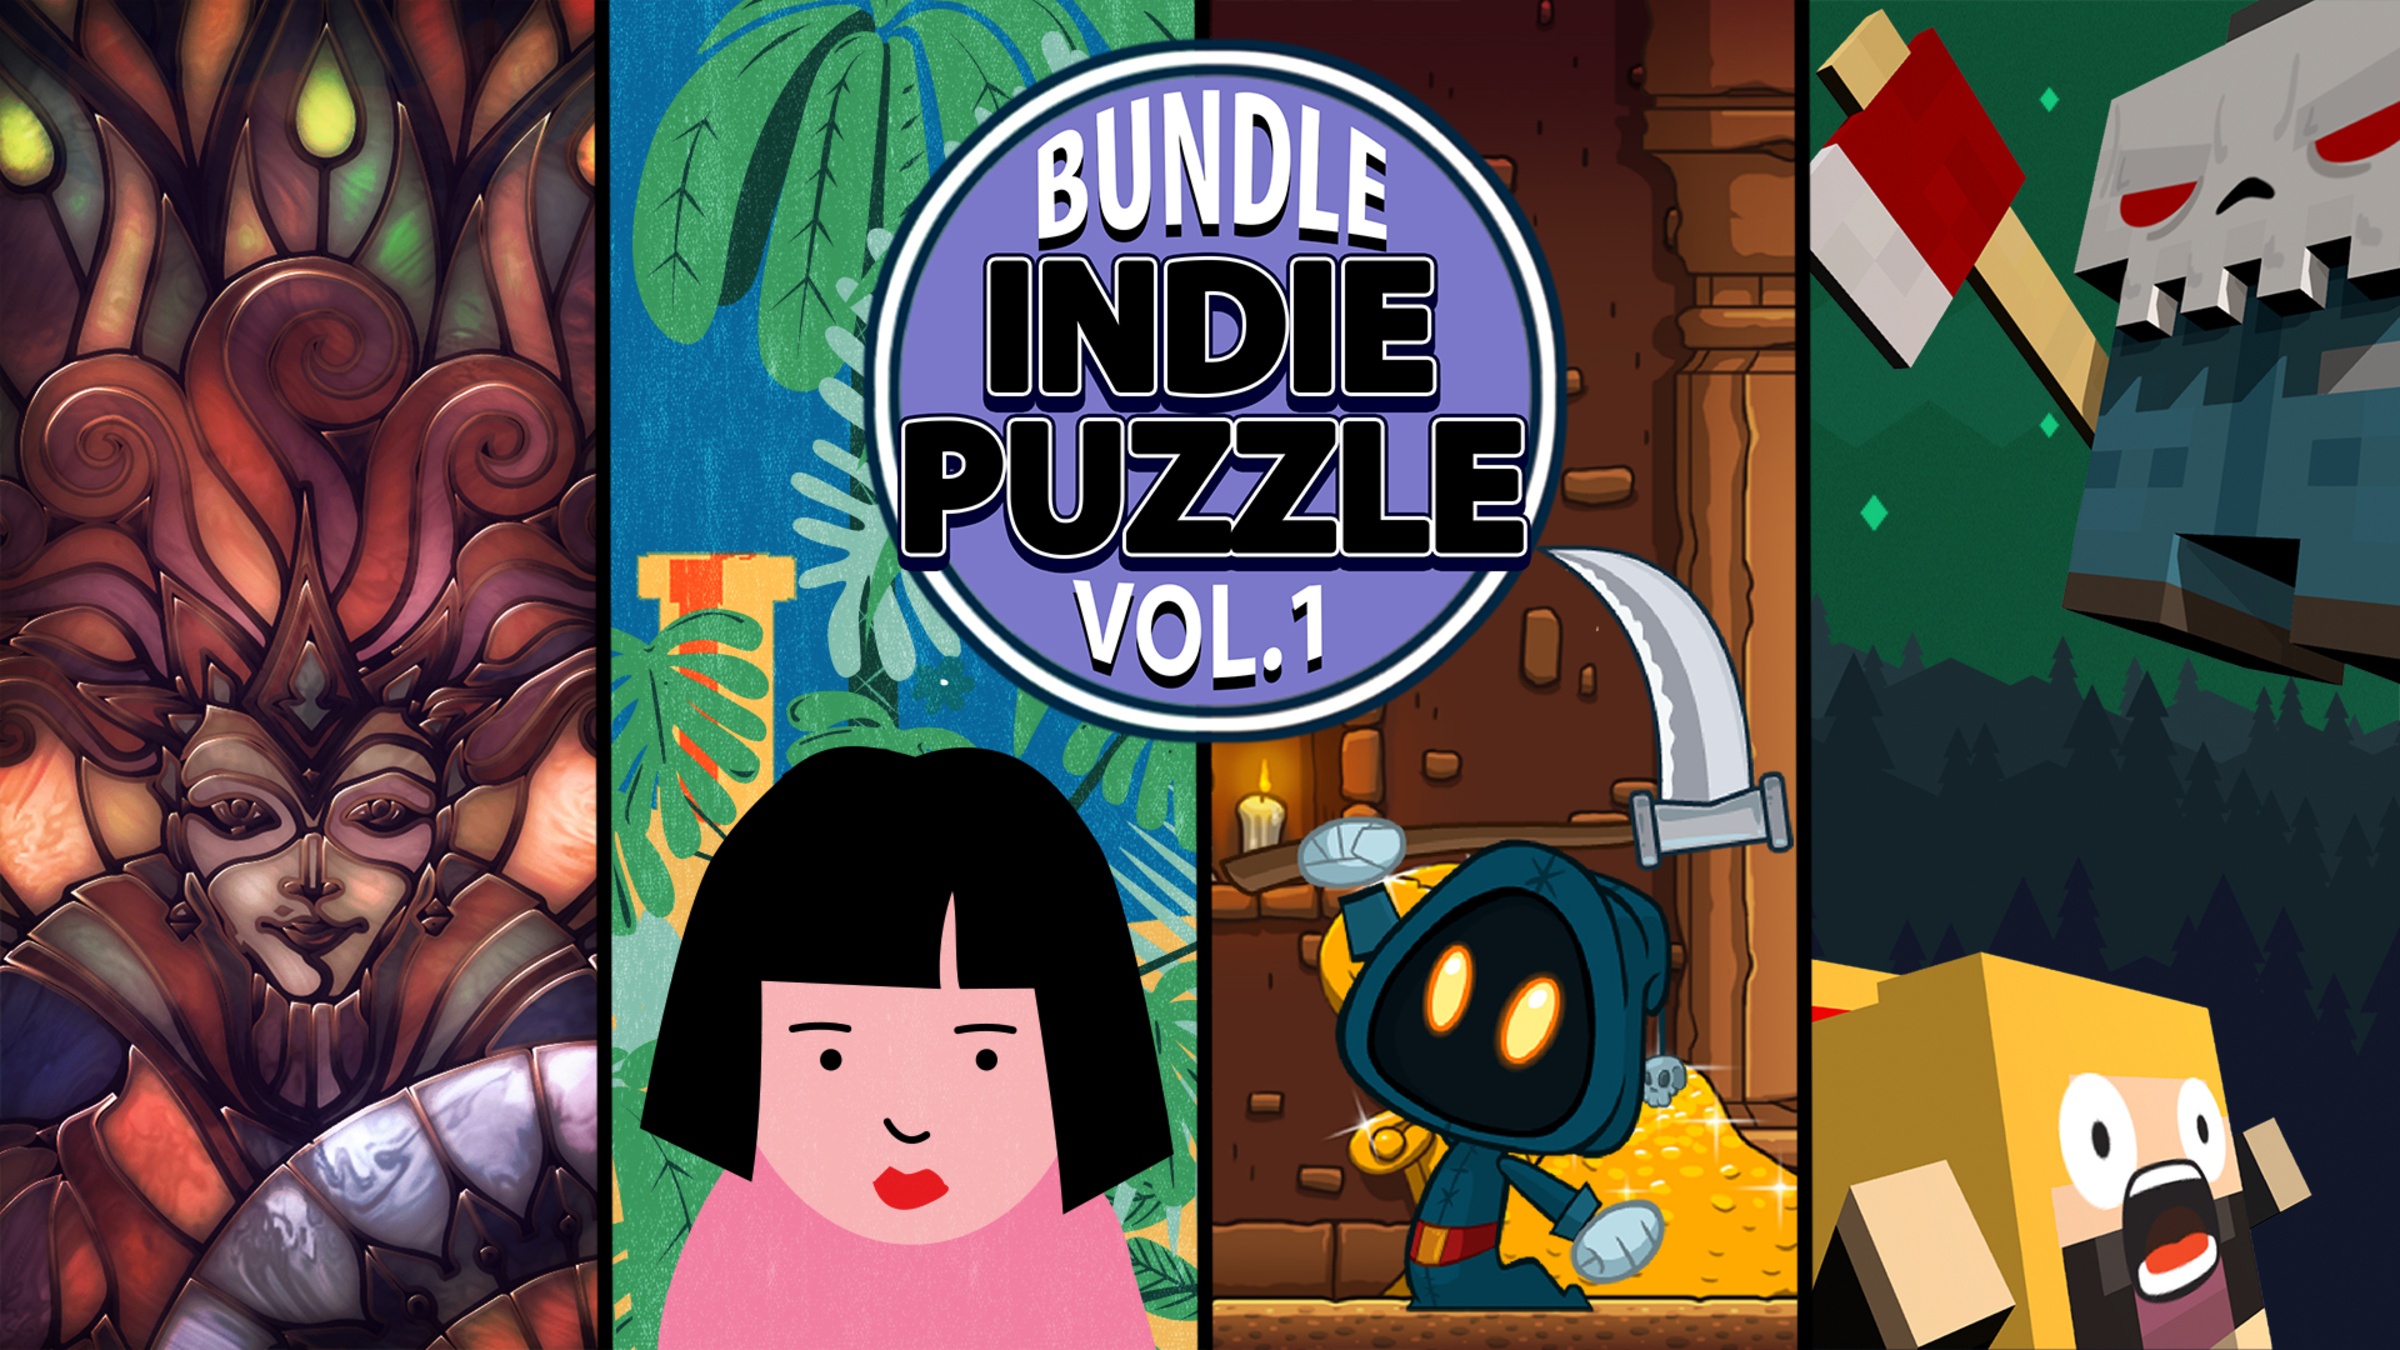 Indie Puzzle Game Hue is FREE on Steam - Indie Game Bundles